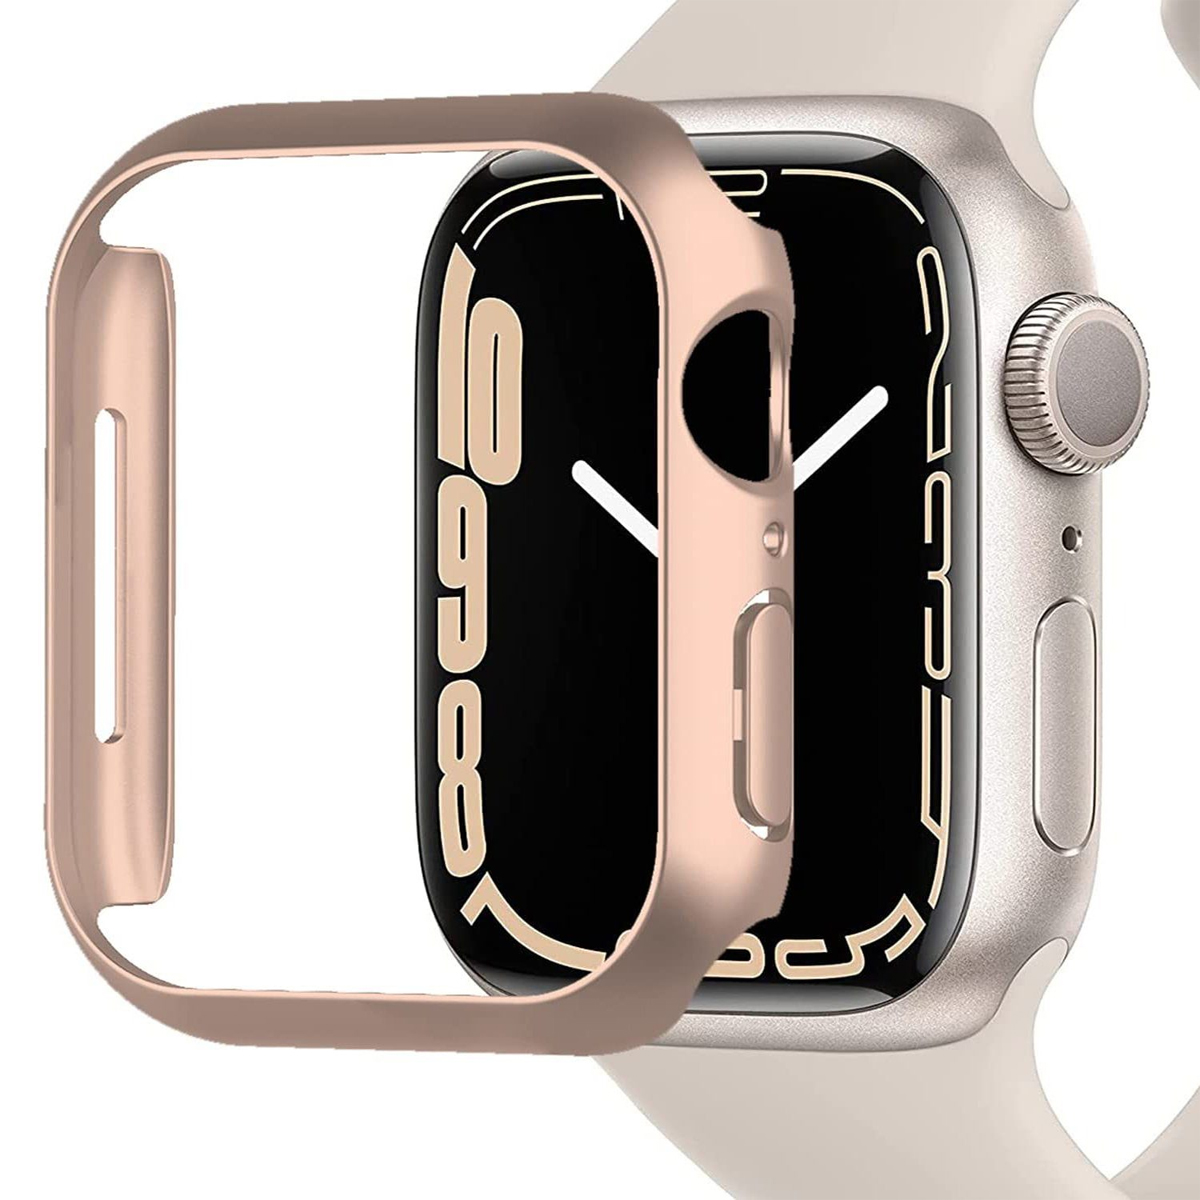 Folie, Schutzhülle Schutzfolien, für Series1-7 44mm, Apple Apple, Watch Rotgold Zubehör,Mit gehärteter 44mm Smartwatch DIIDA